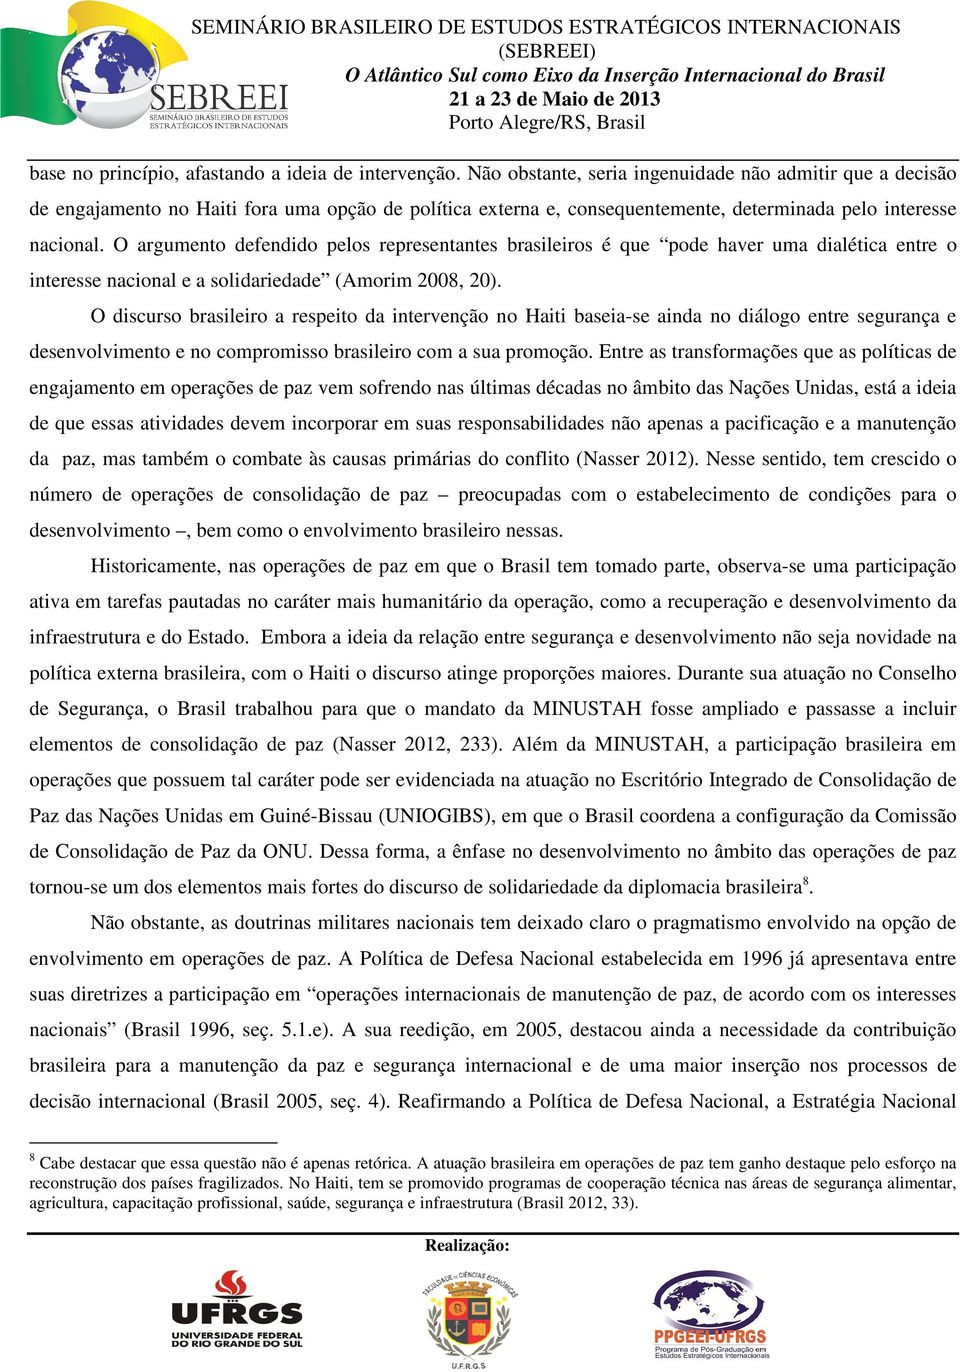 O argumento defendido pelos representantes brasileiros é que pode haver uma dialética entre o interesse nacional e a solidariedade (Amorim 2008, 20).